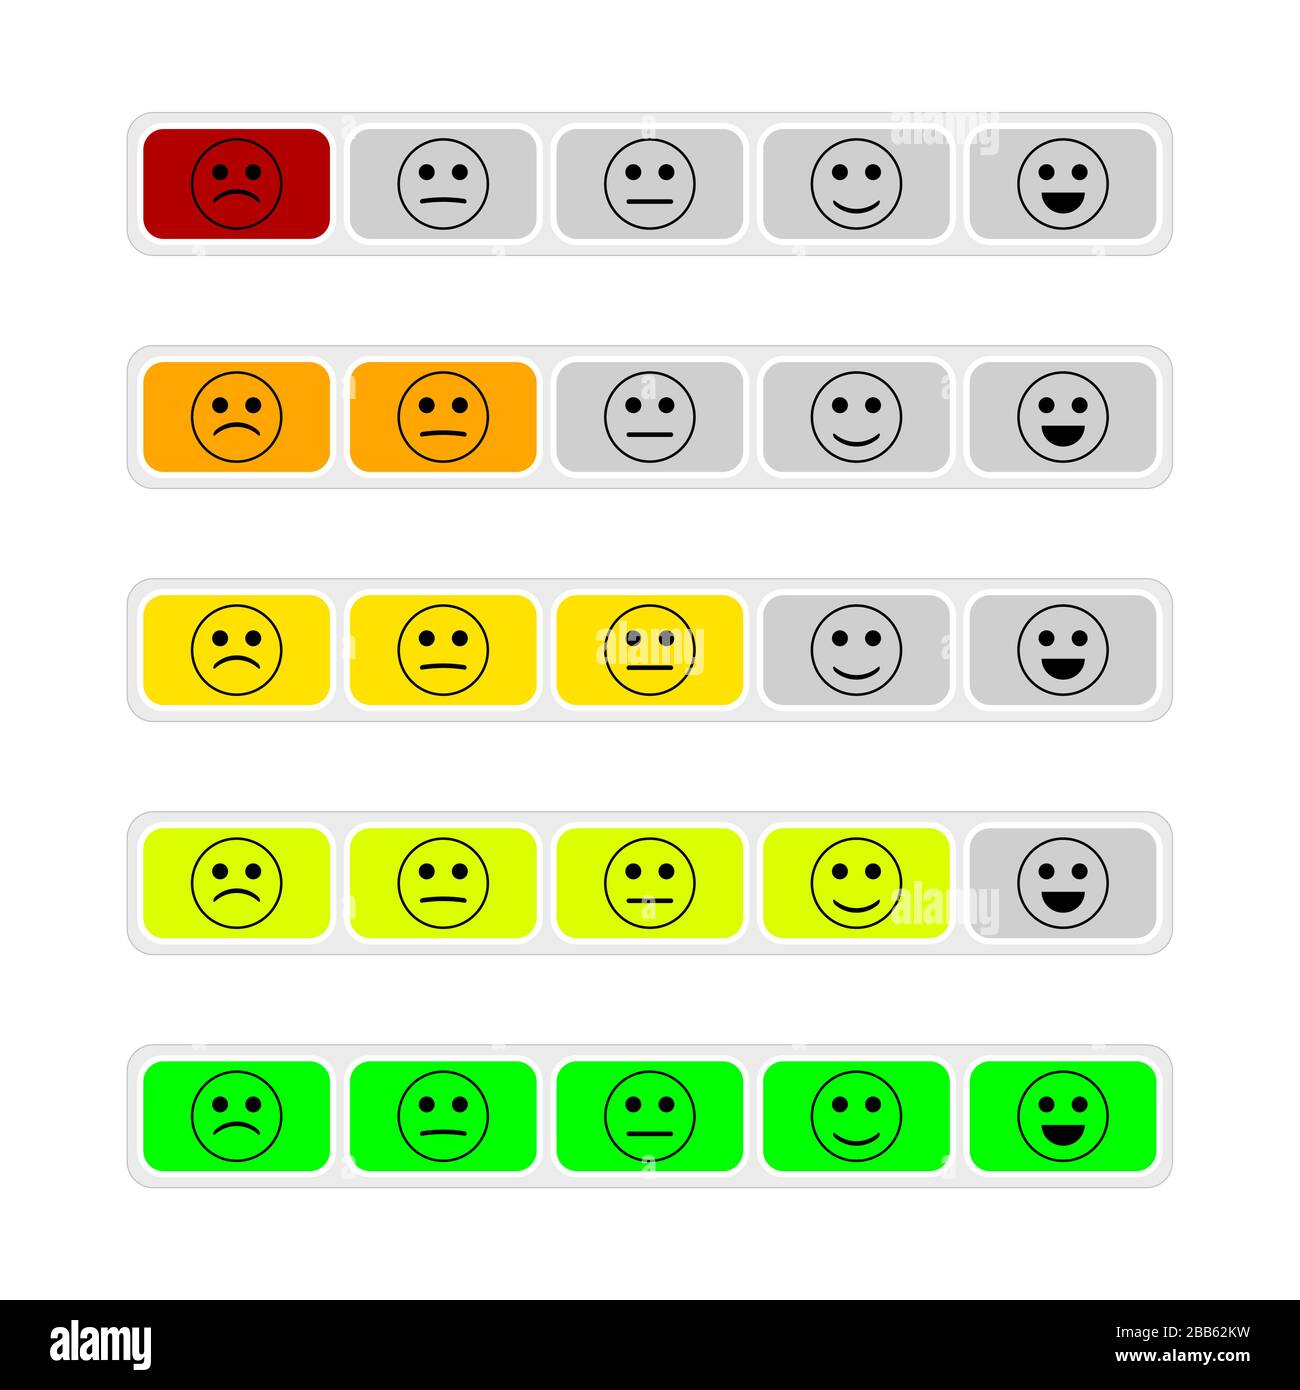 Révision du taux client, boutons colorés avec sourires. Évaluation des commentaires sur les boutons, évaluation des émoticônes positives et de l'humeur du client, enquête sur la qualité du service. Vecteur Illustration de Vecteur